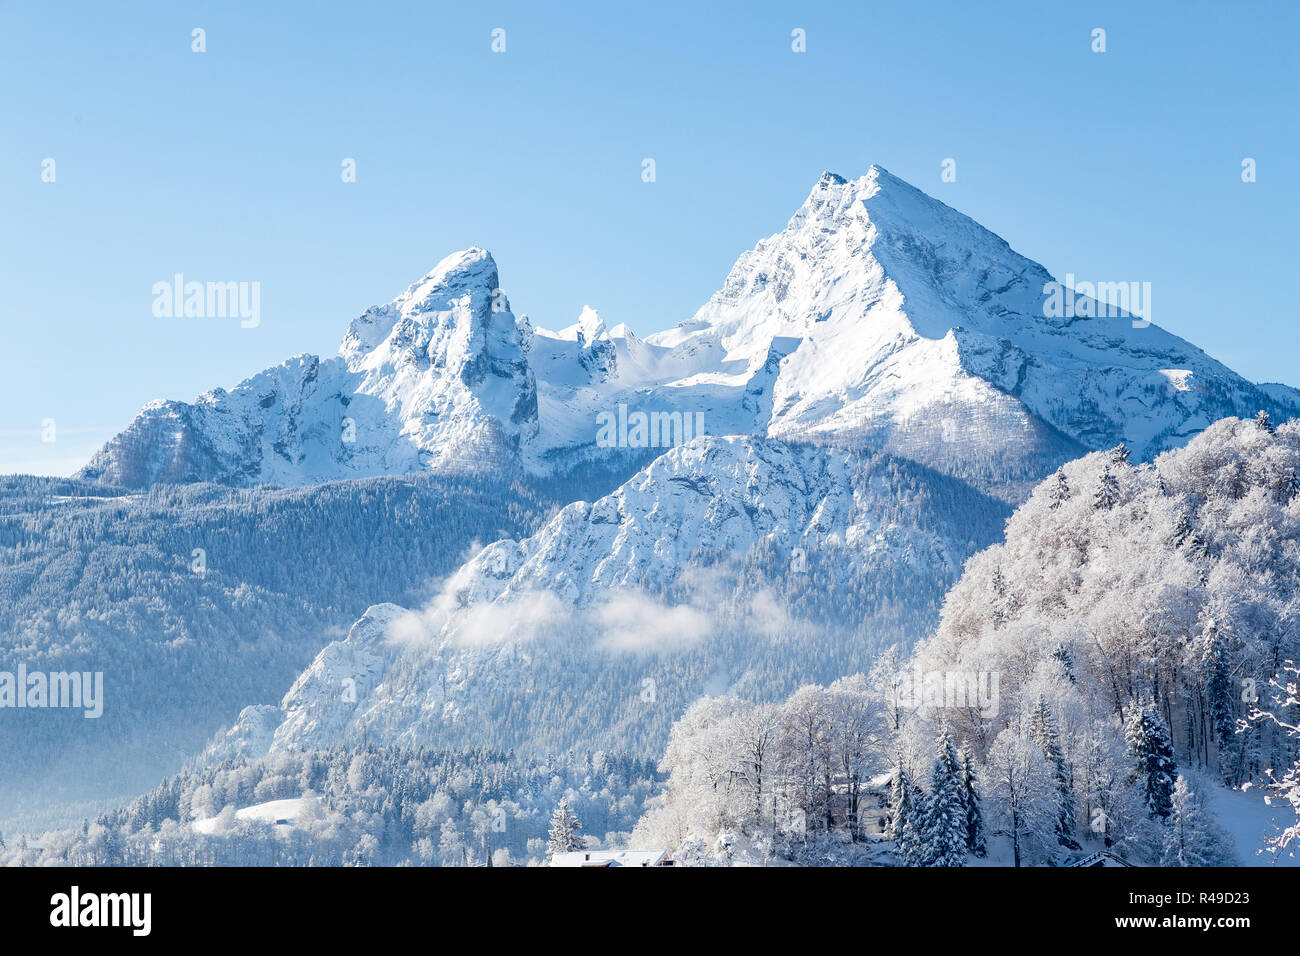 Hermosa vista de la famosa montaña de Watzmann pico en un frío día soleado en invierno, Baviera, Alemania Foto de stock